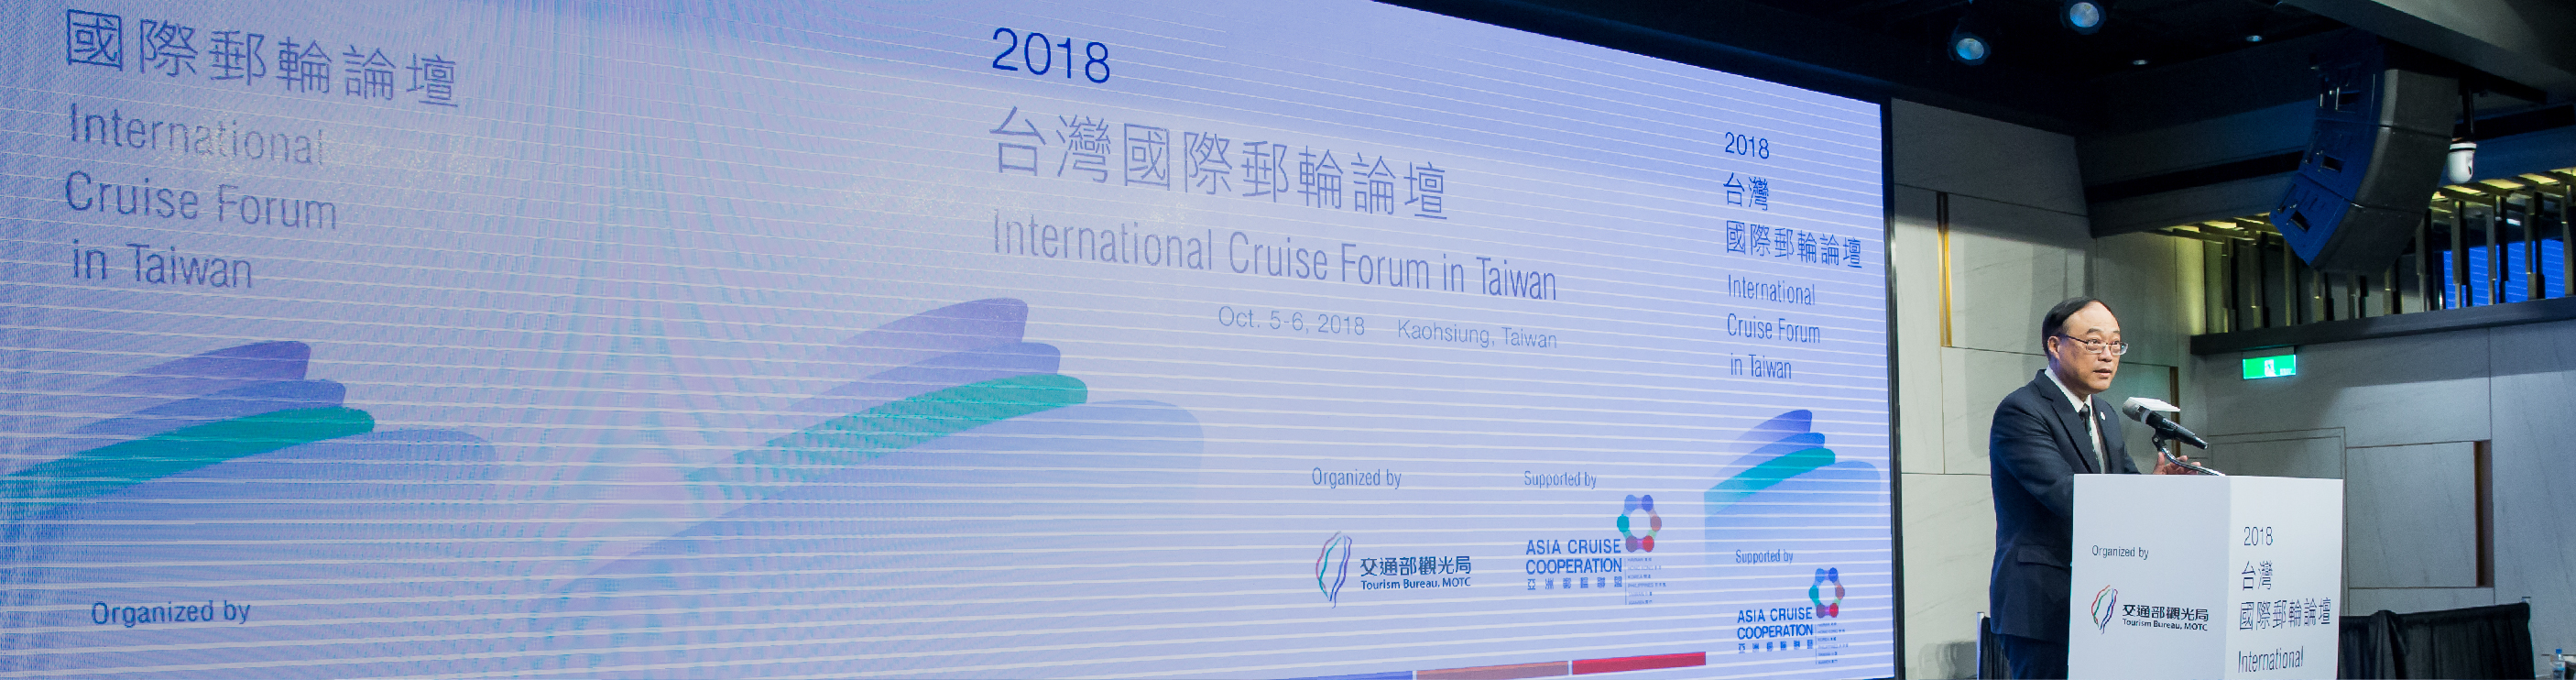 2018 台灣國際郵輪論壇